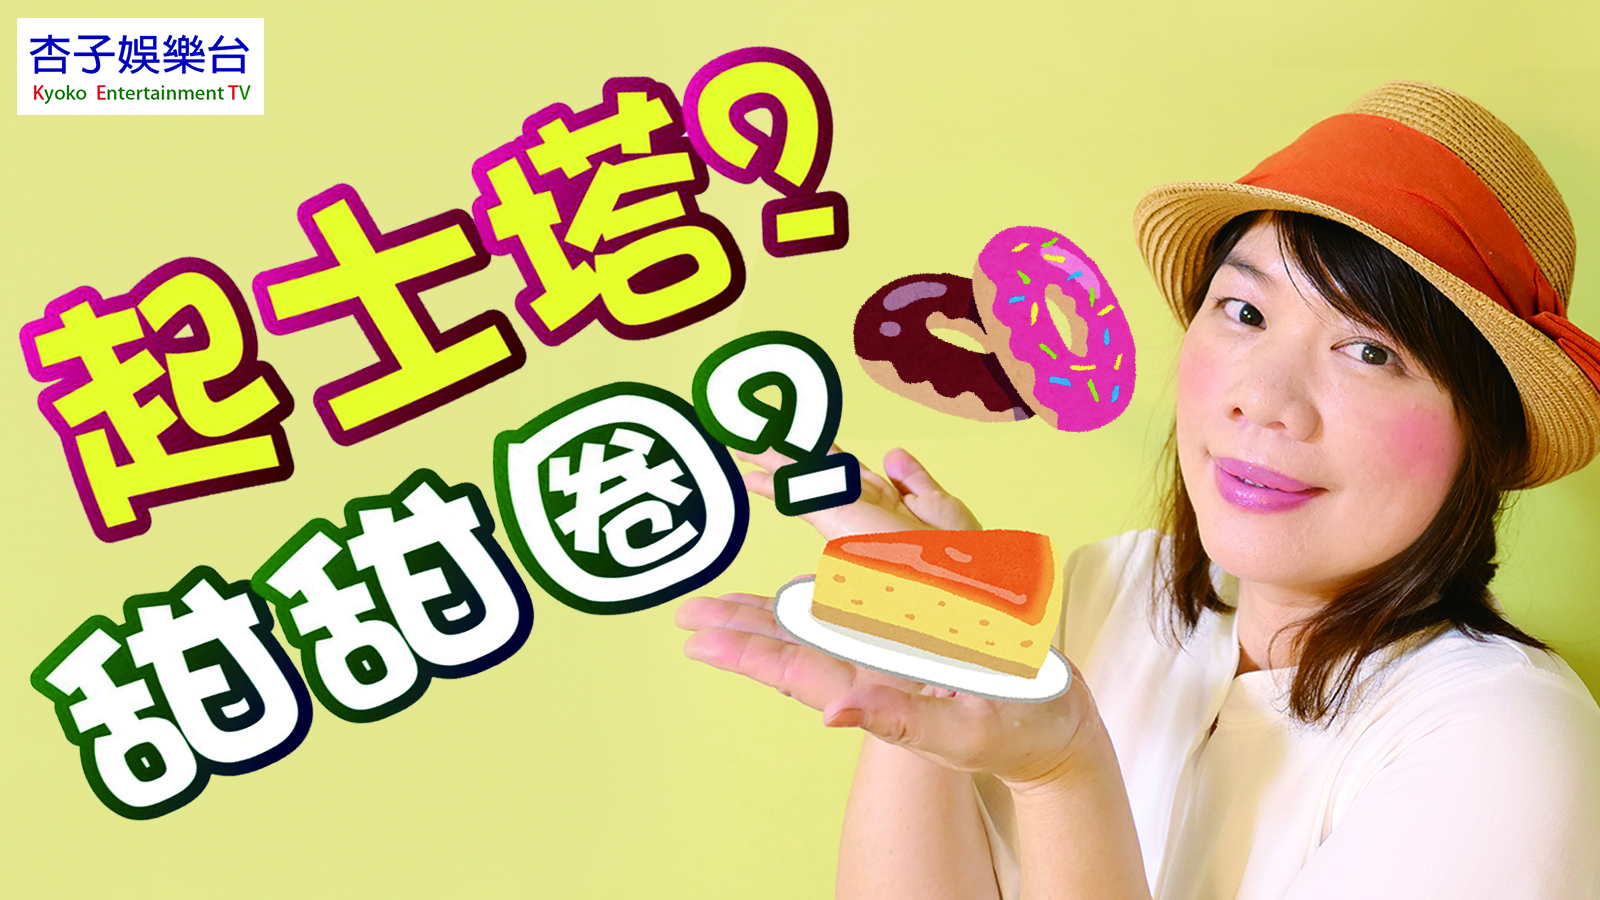 日本話題新商品 ｜  Misudo X PABLO 起士塔甜甜圈試吃記＜杏子娛樂台＞16